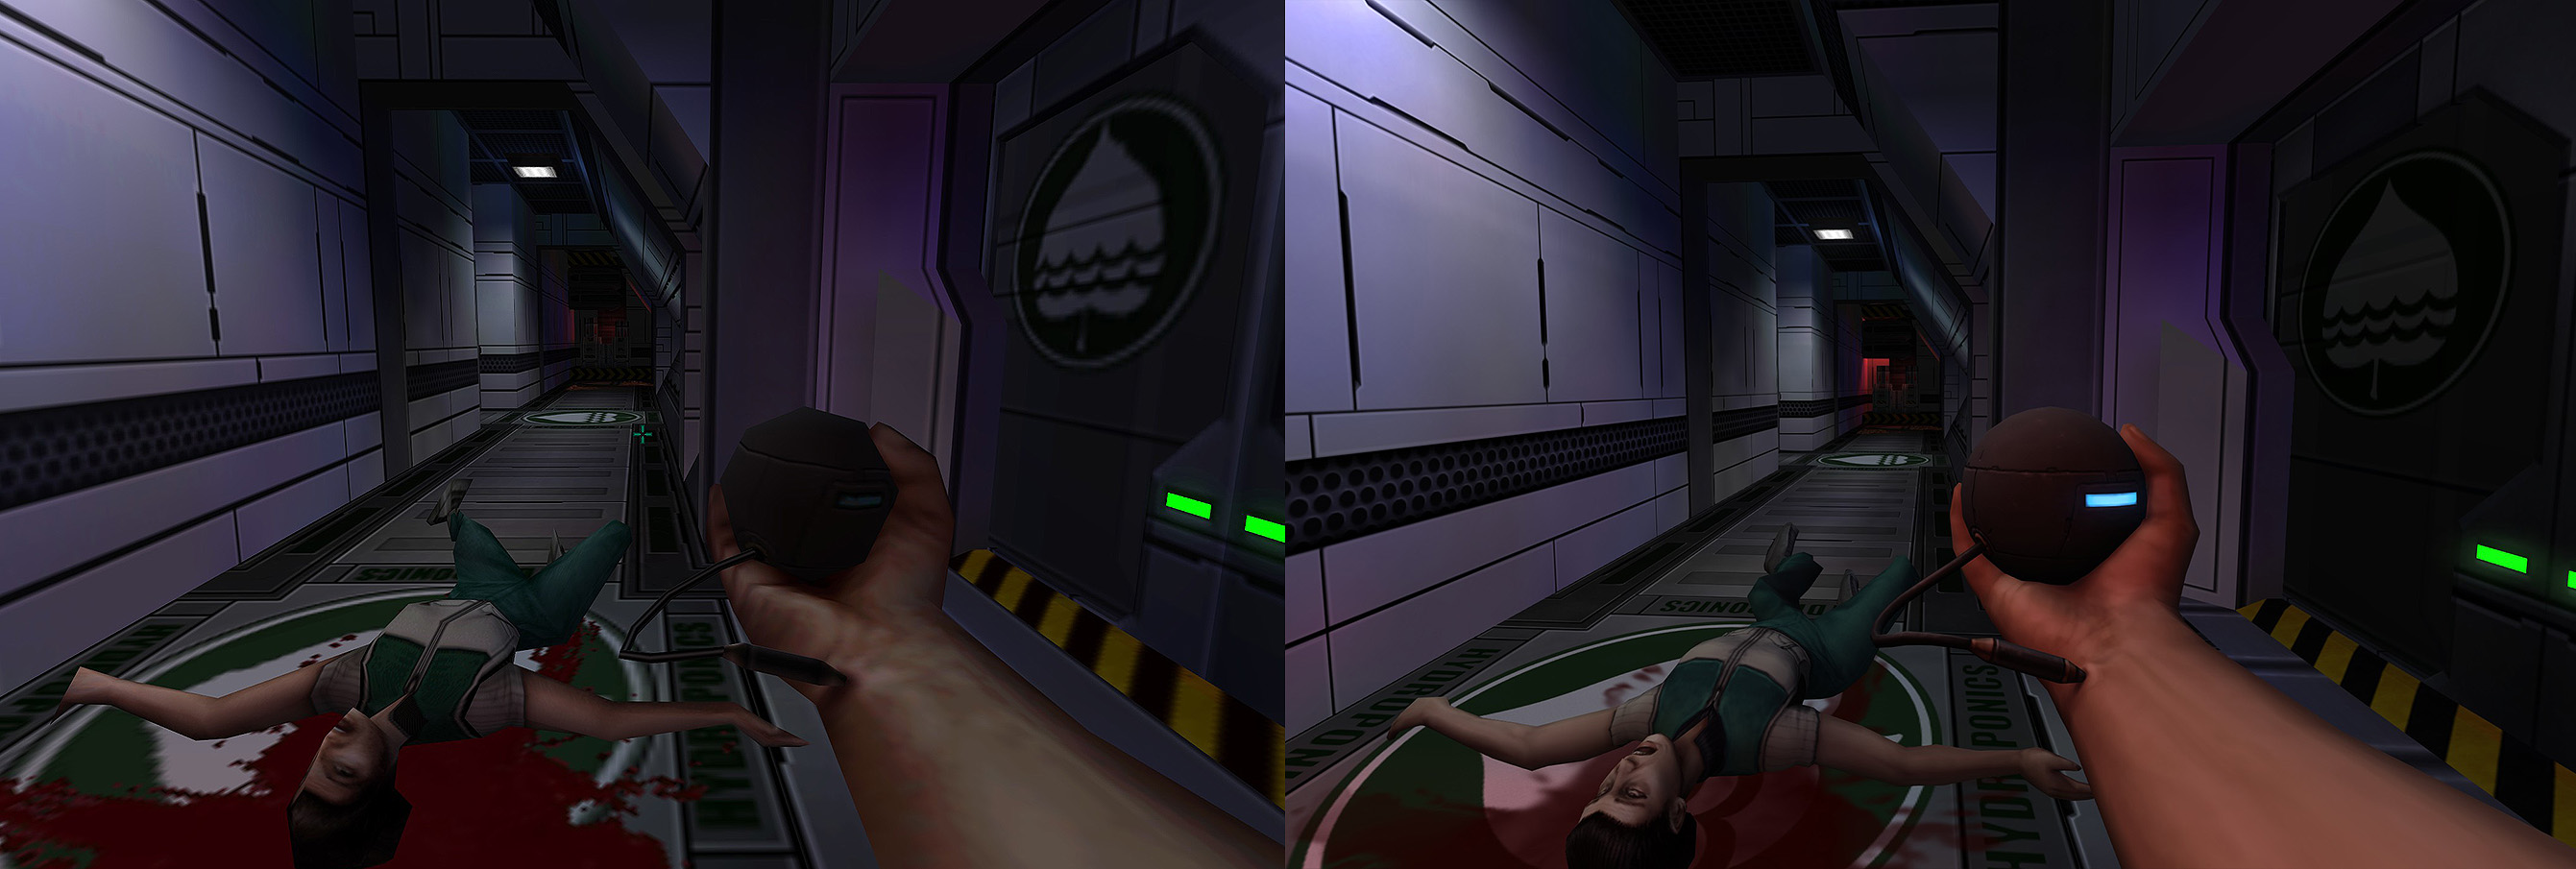 Vergleichsbild der System Shock Enhanced Edition